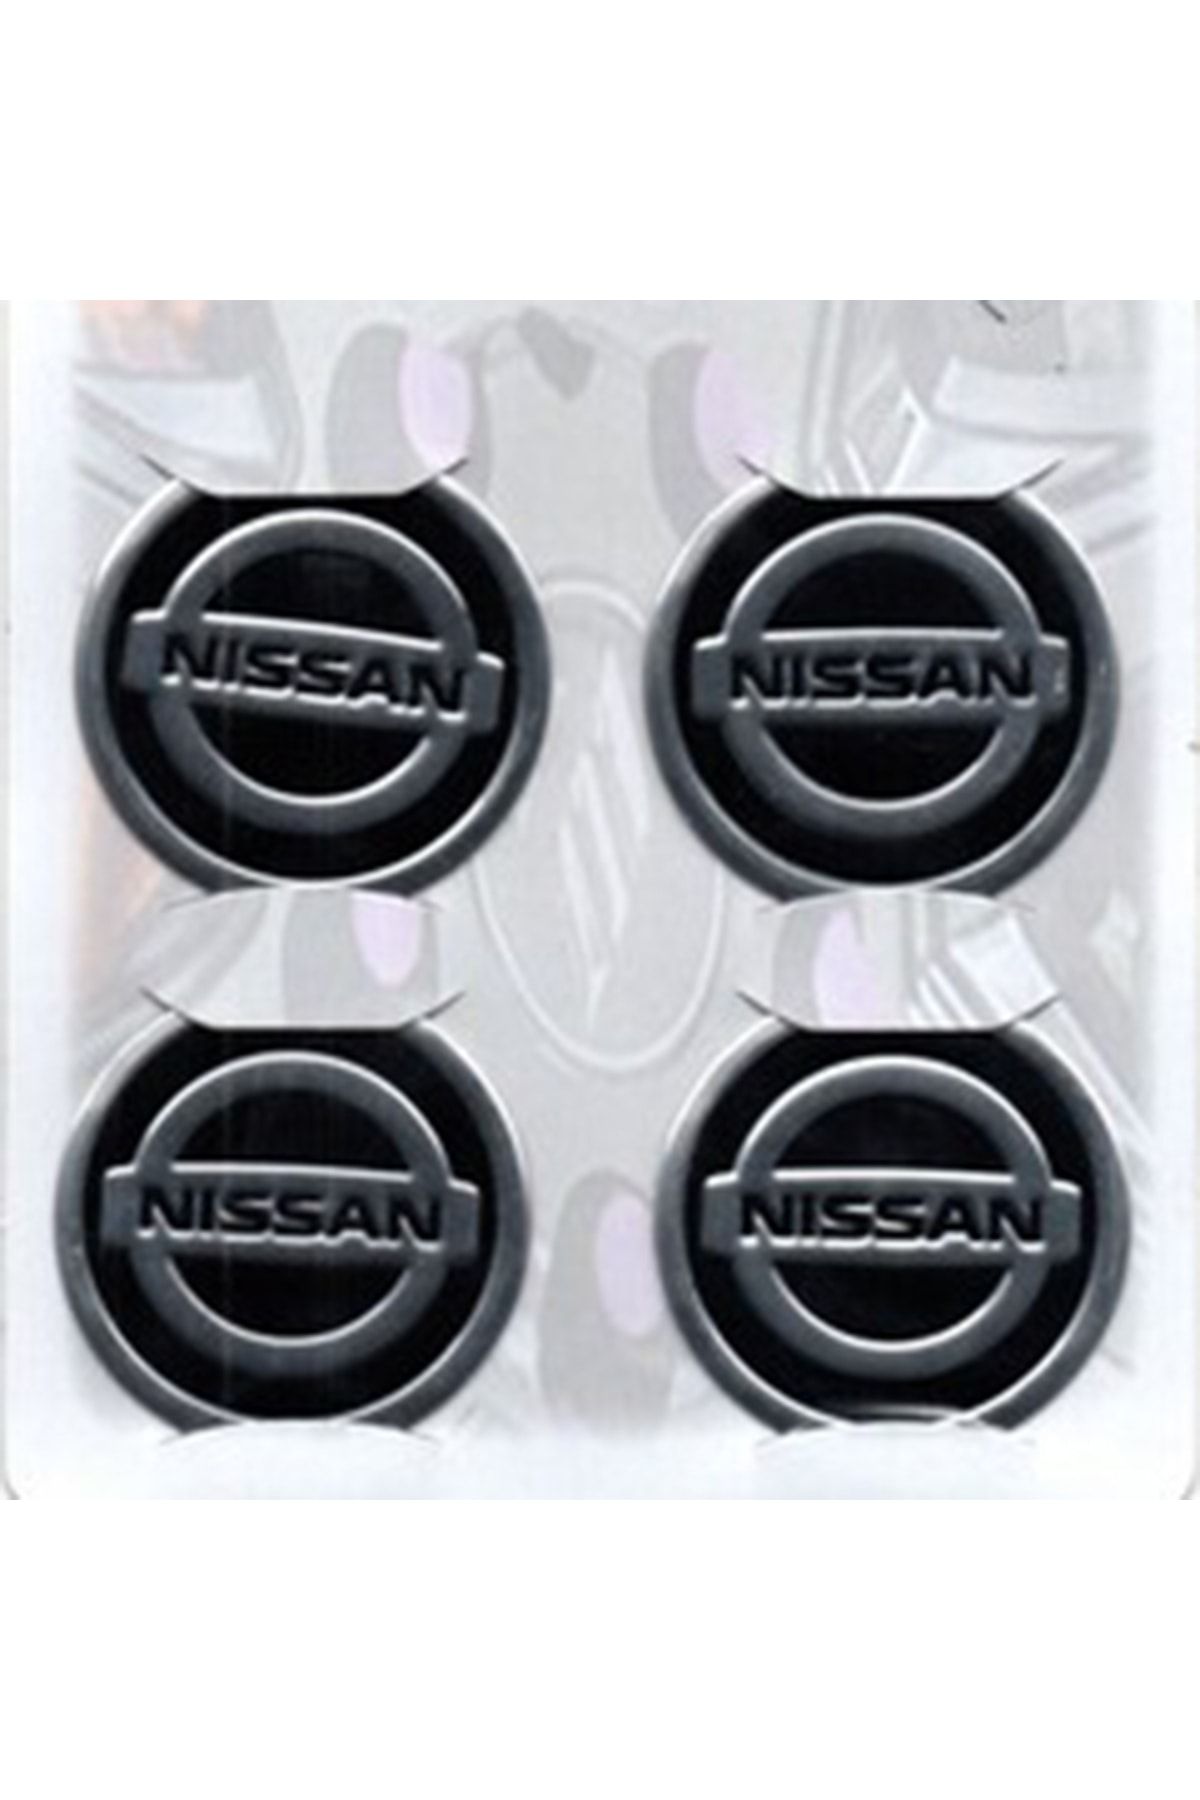 EFL Nissan Siyah Alüminyum Yapıştırma Jant Göbeği 4lü 60mm